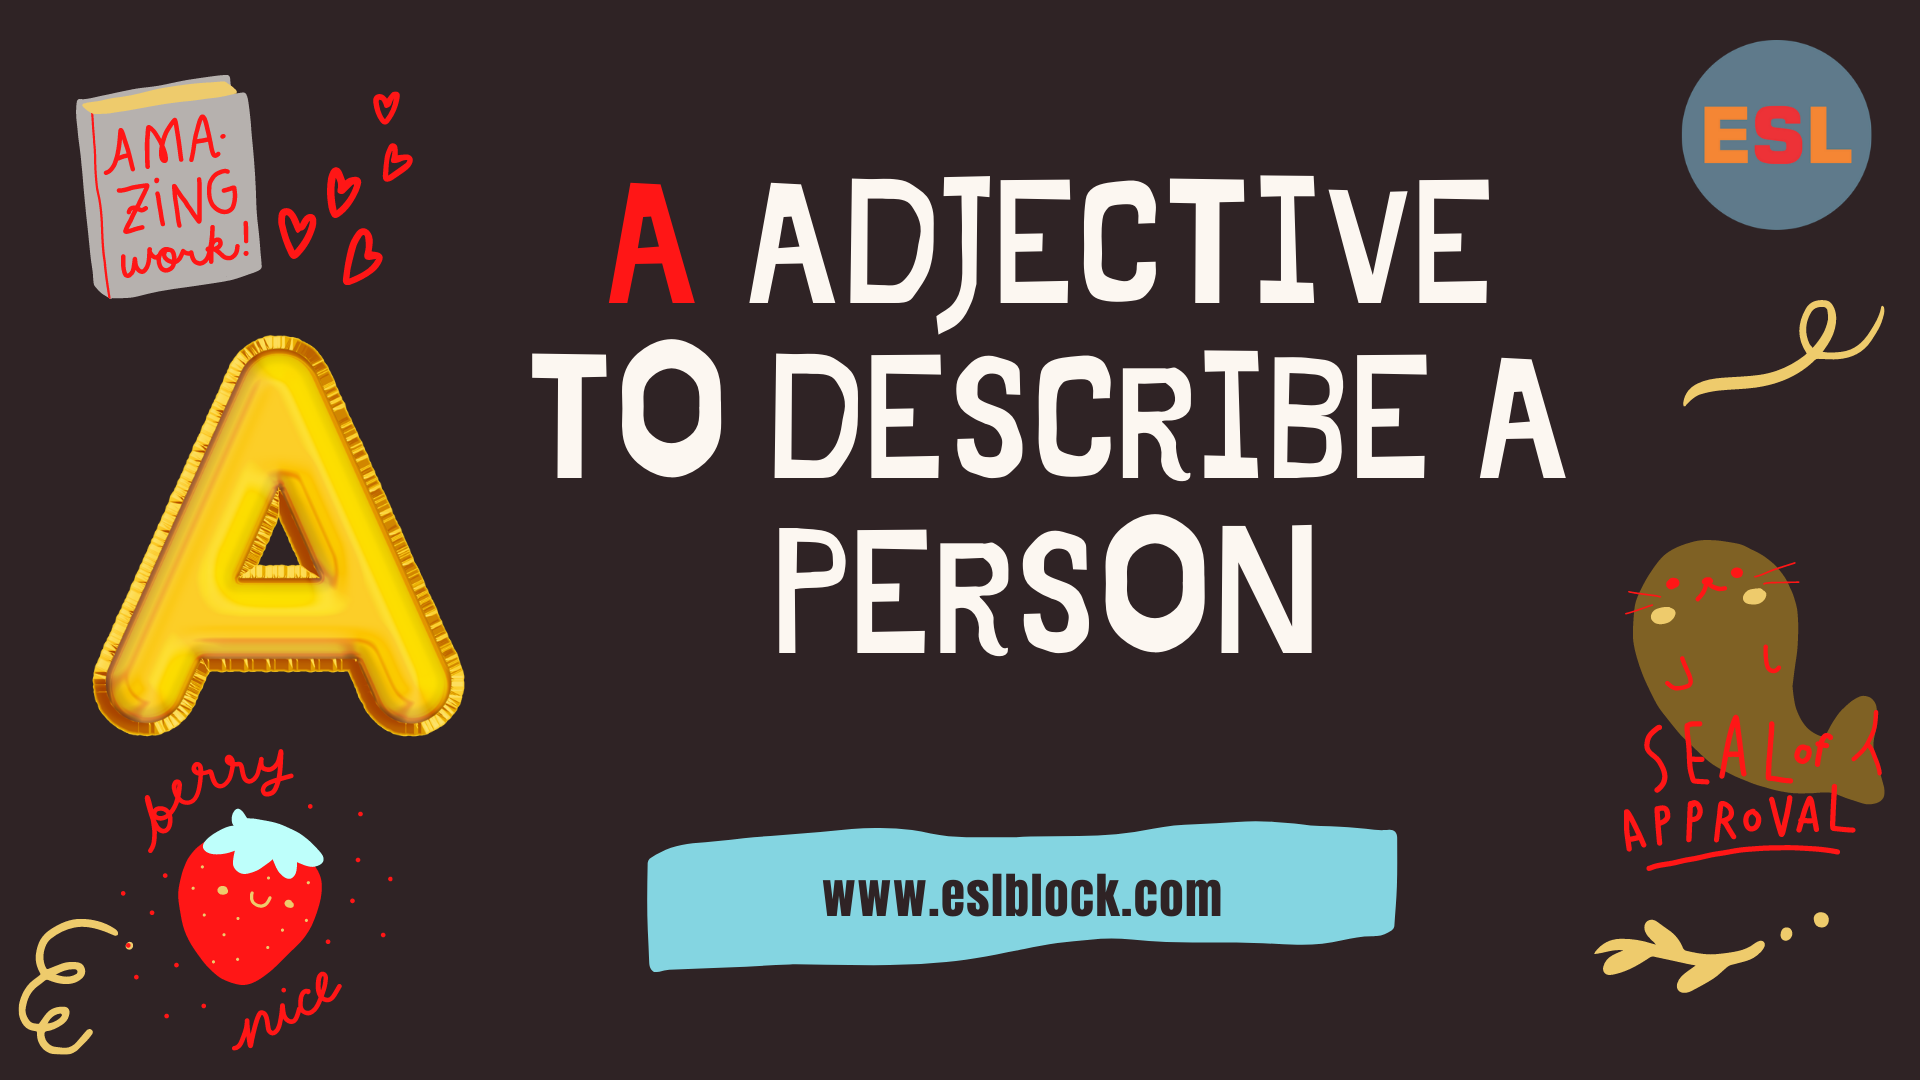 A Adjectives to Describe a Person, A Positive Adjectives to Describe a Person, A Words, A-Z Adjectives, Adjective Words, Adjectives, Adjectives to describe a person, Positive Adjectives to Describe a Person, Vocabulary, Words That Describe a Person